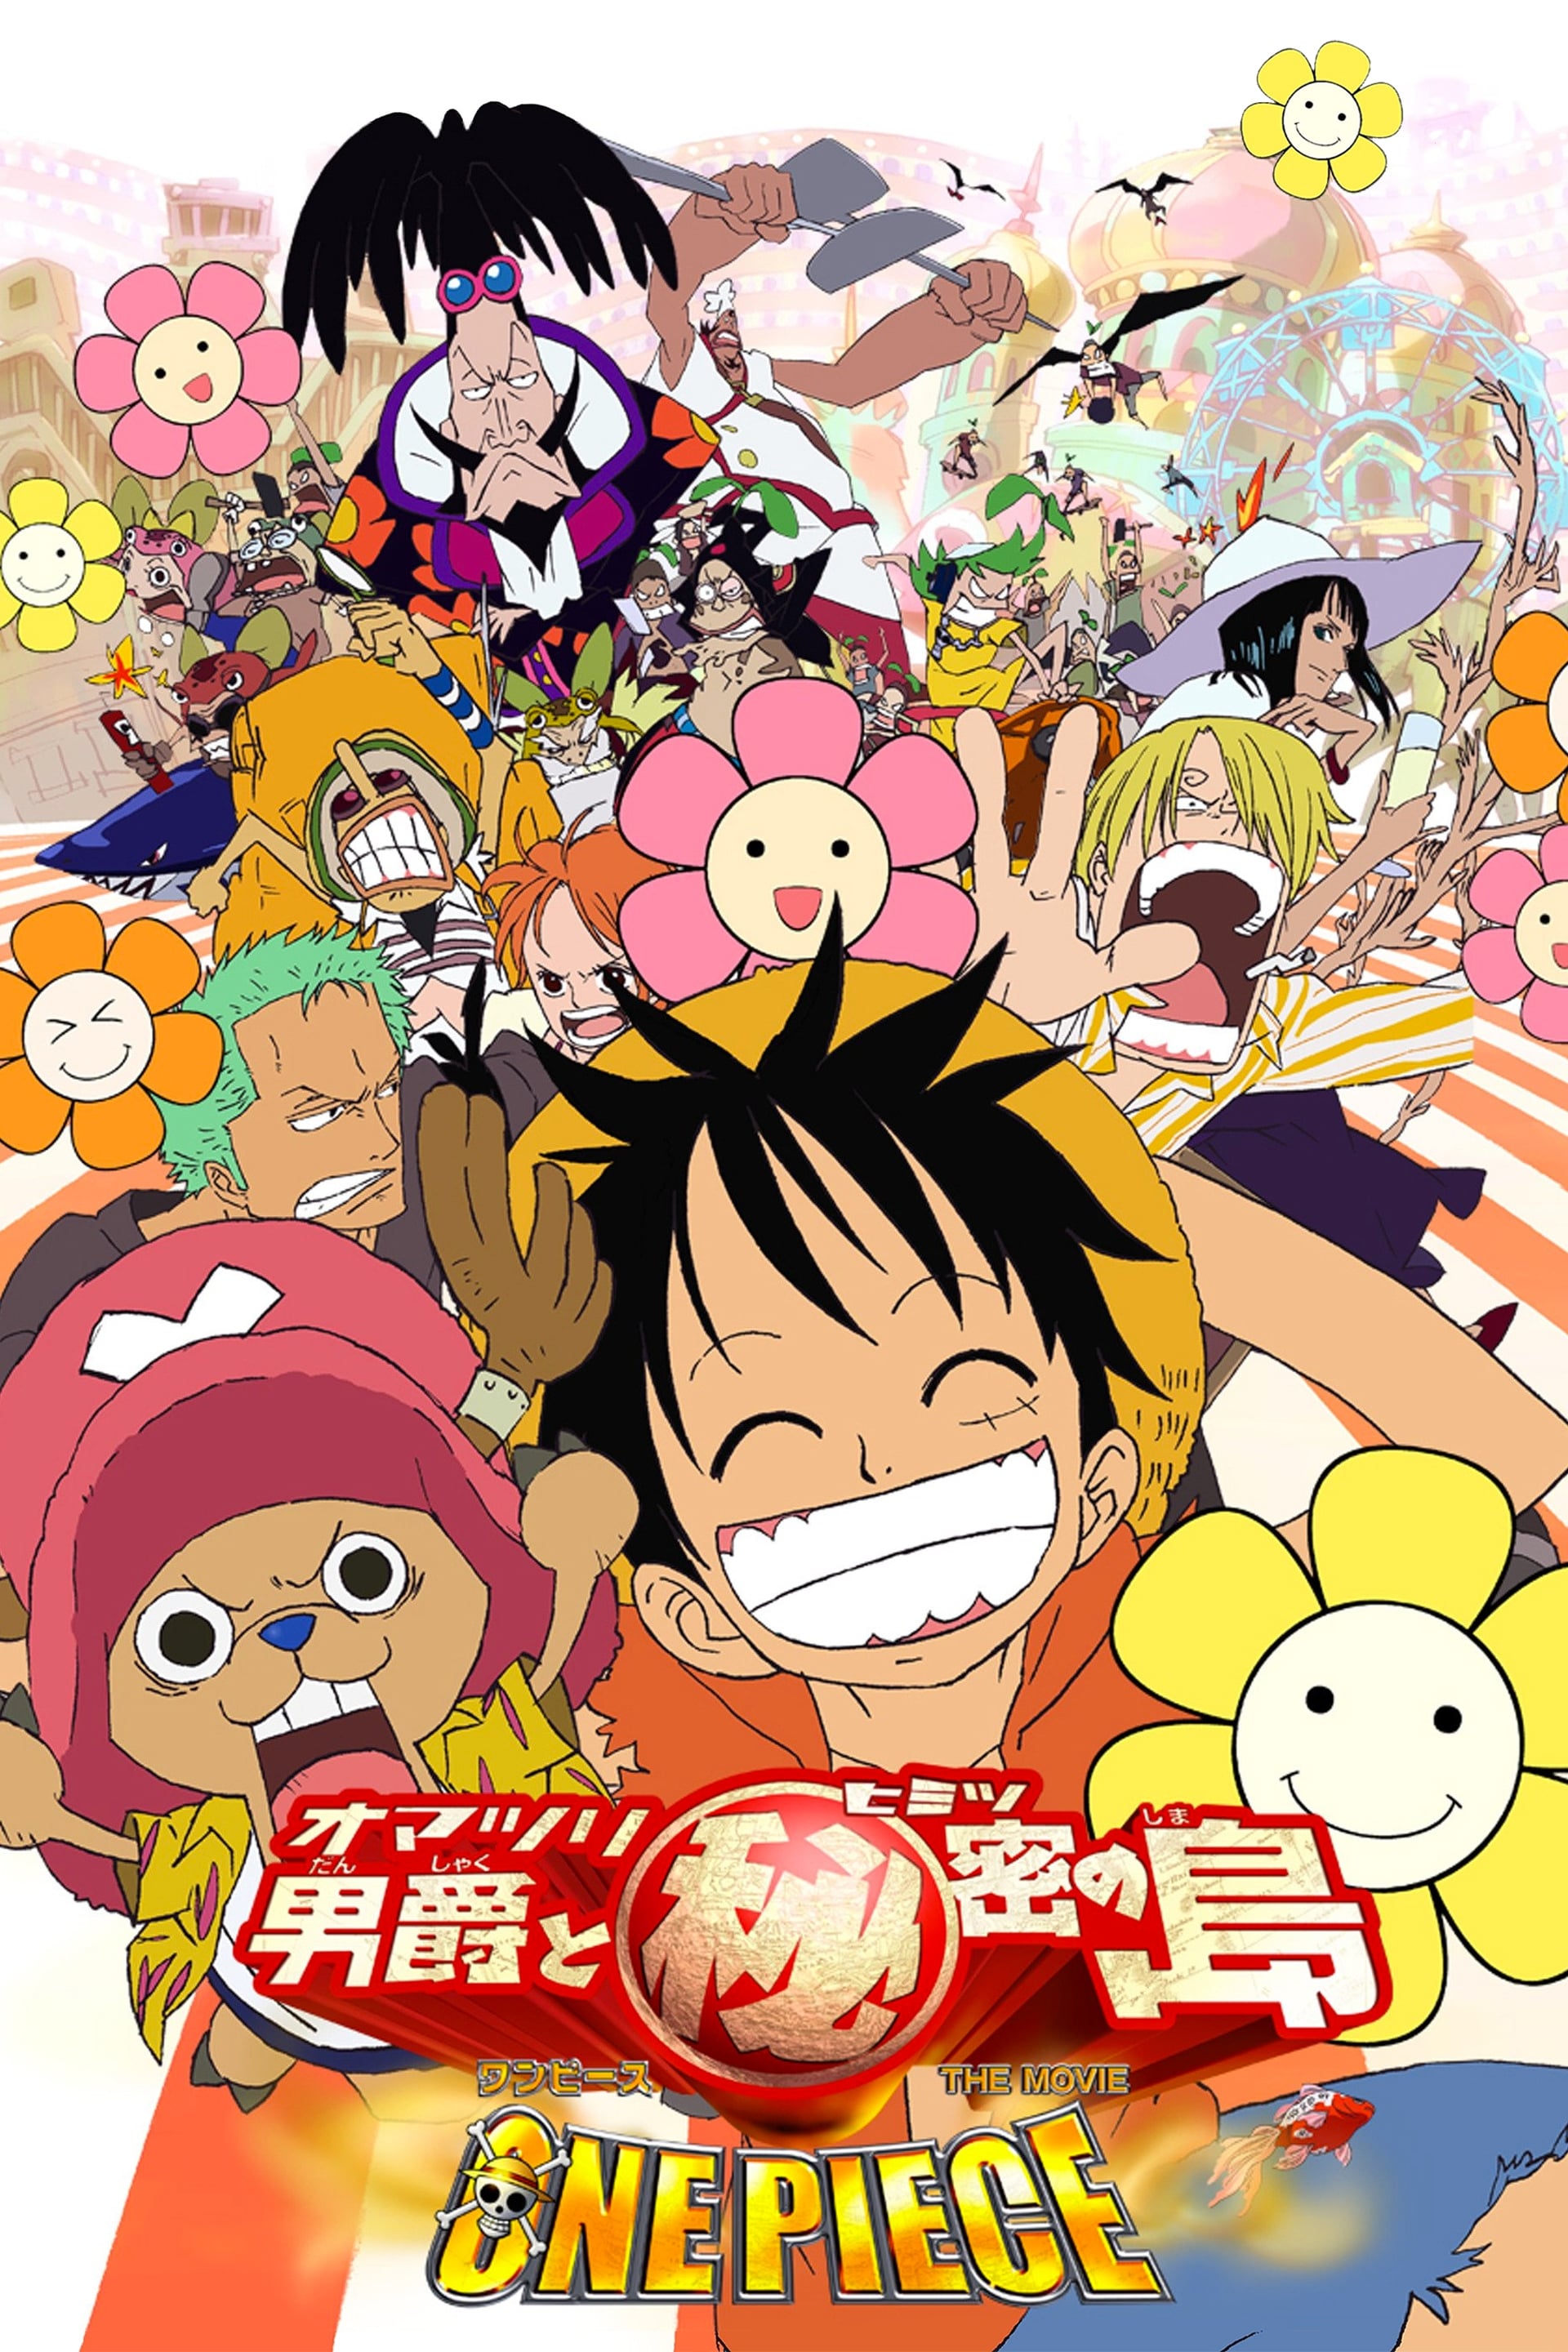 One Piece, film 6 : Le Baron Omatsuri et l’île secrète